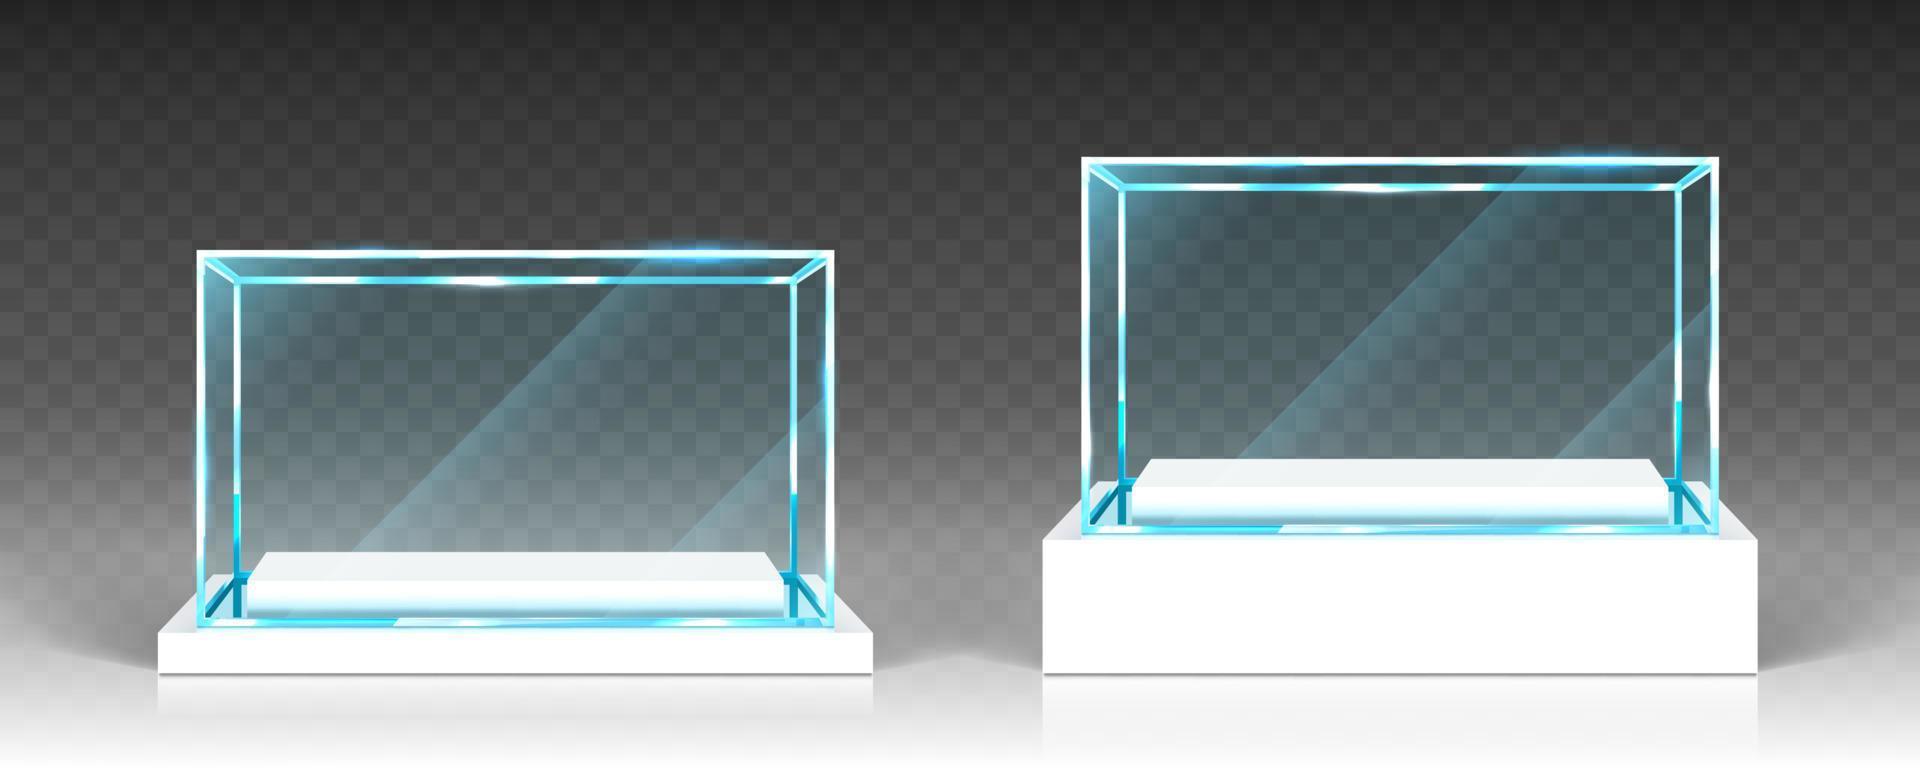 Glasvitrine, Display, transparente Boxen ausstellen vektor